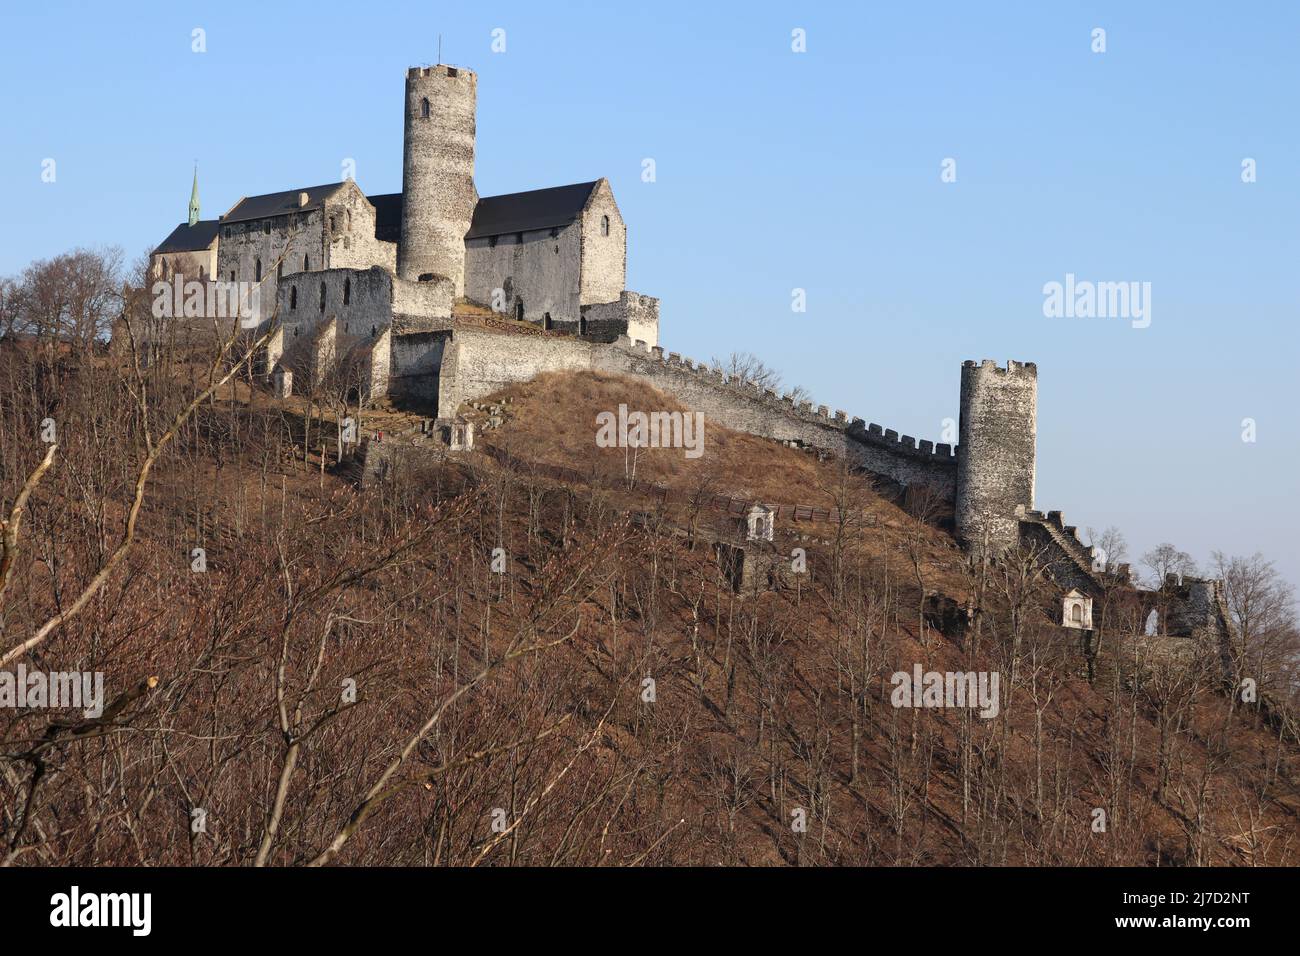 Il castello reale di Bezděz è un'imponente struttura gotica del 13th secolo situata nel nord della Repubblica Ceca. Foto Stock